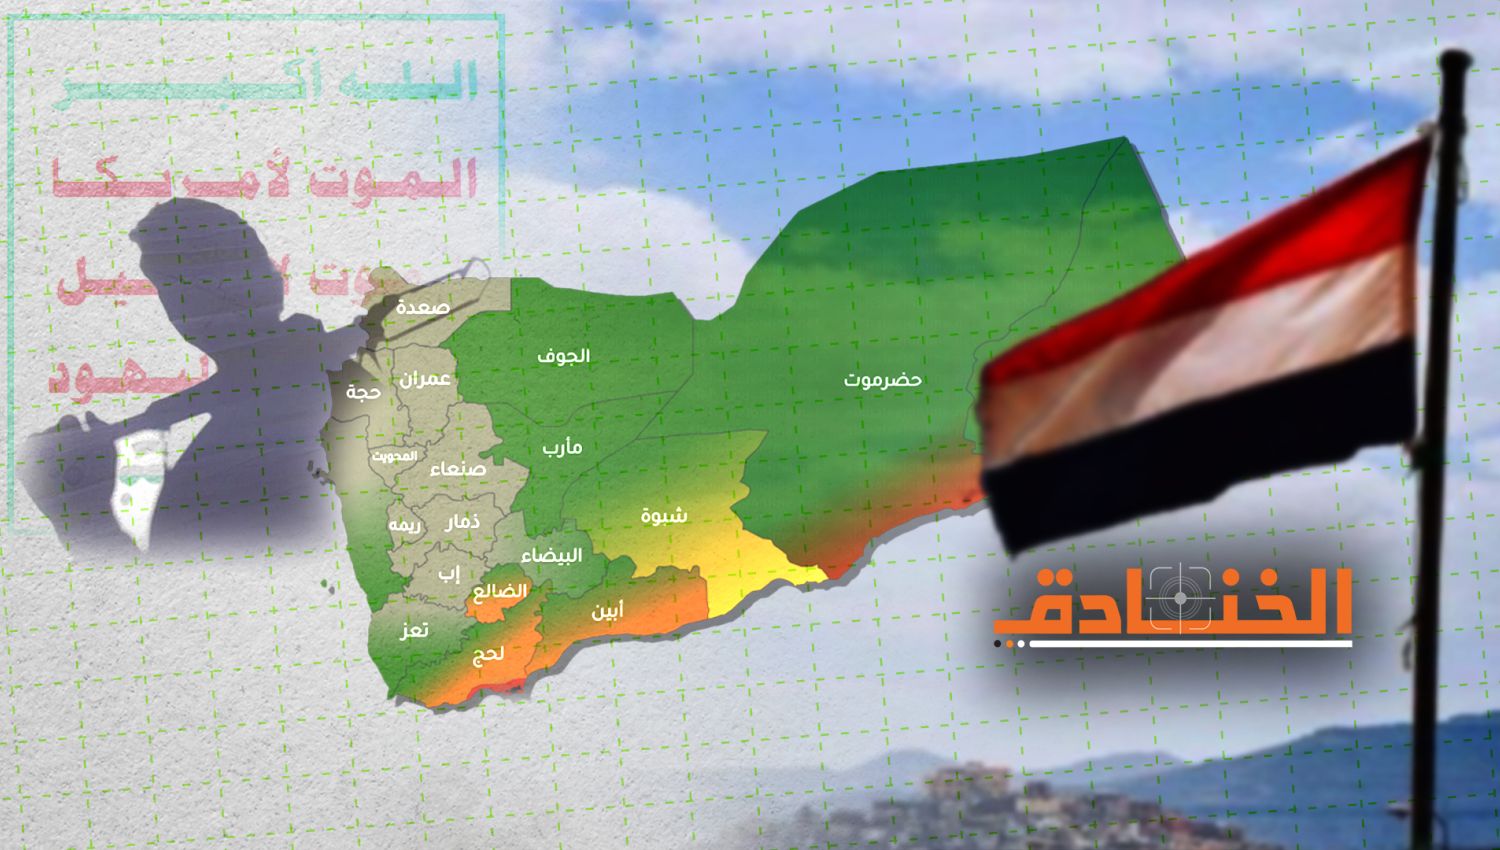 قوات صنعاء تتقدم نحو مأرب وتخبط سياسي داخل "الشرعية"